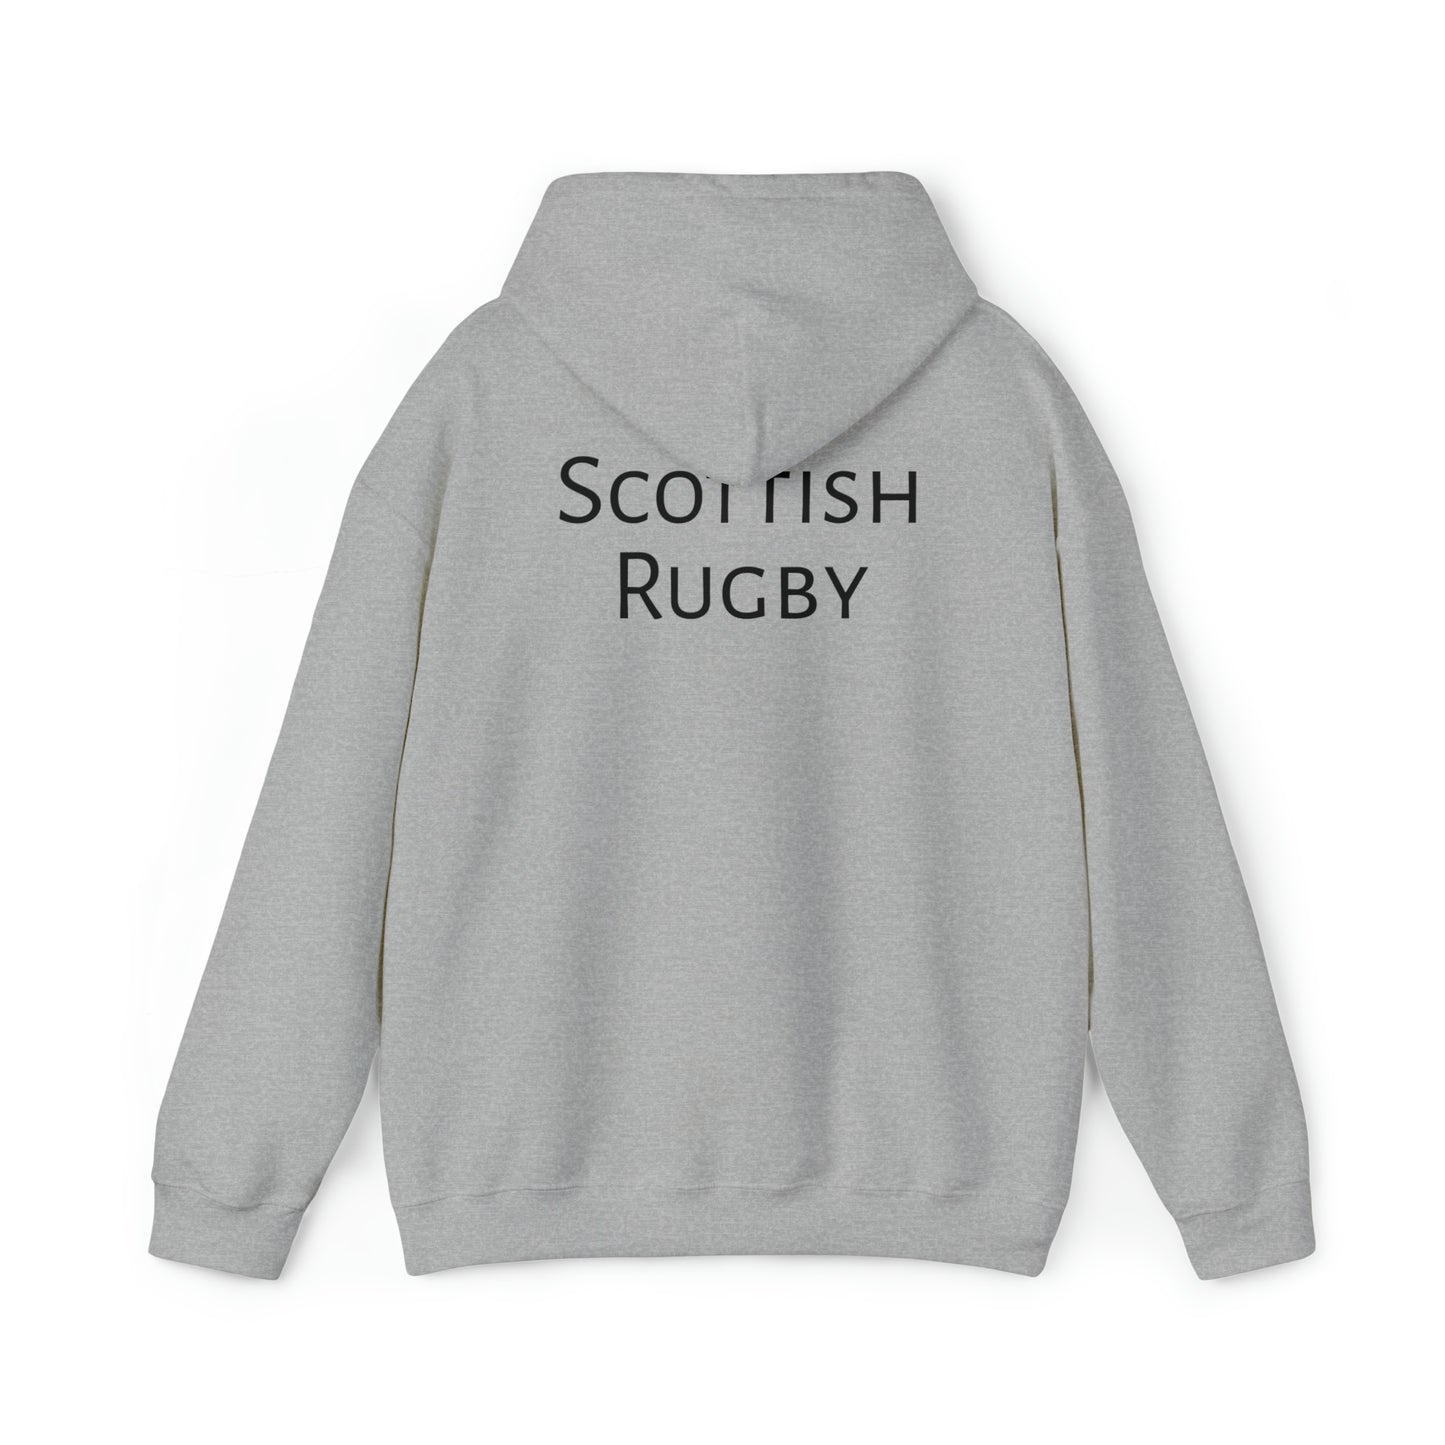 Scotland Winning RWC - light hoodies